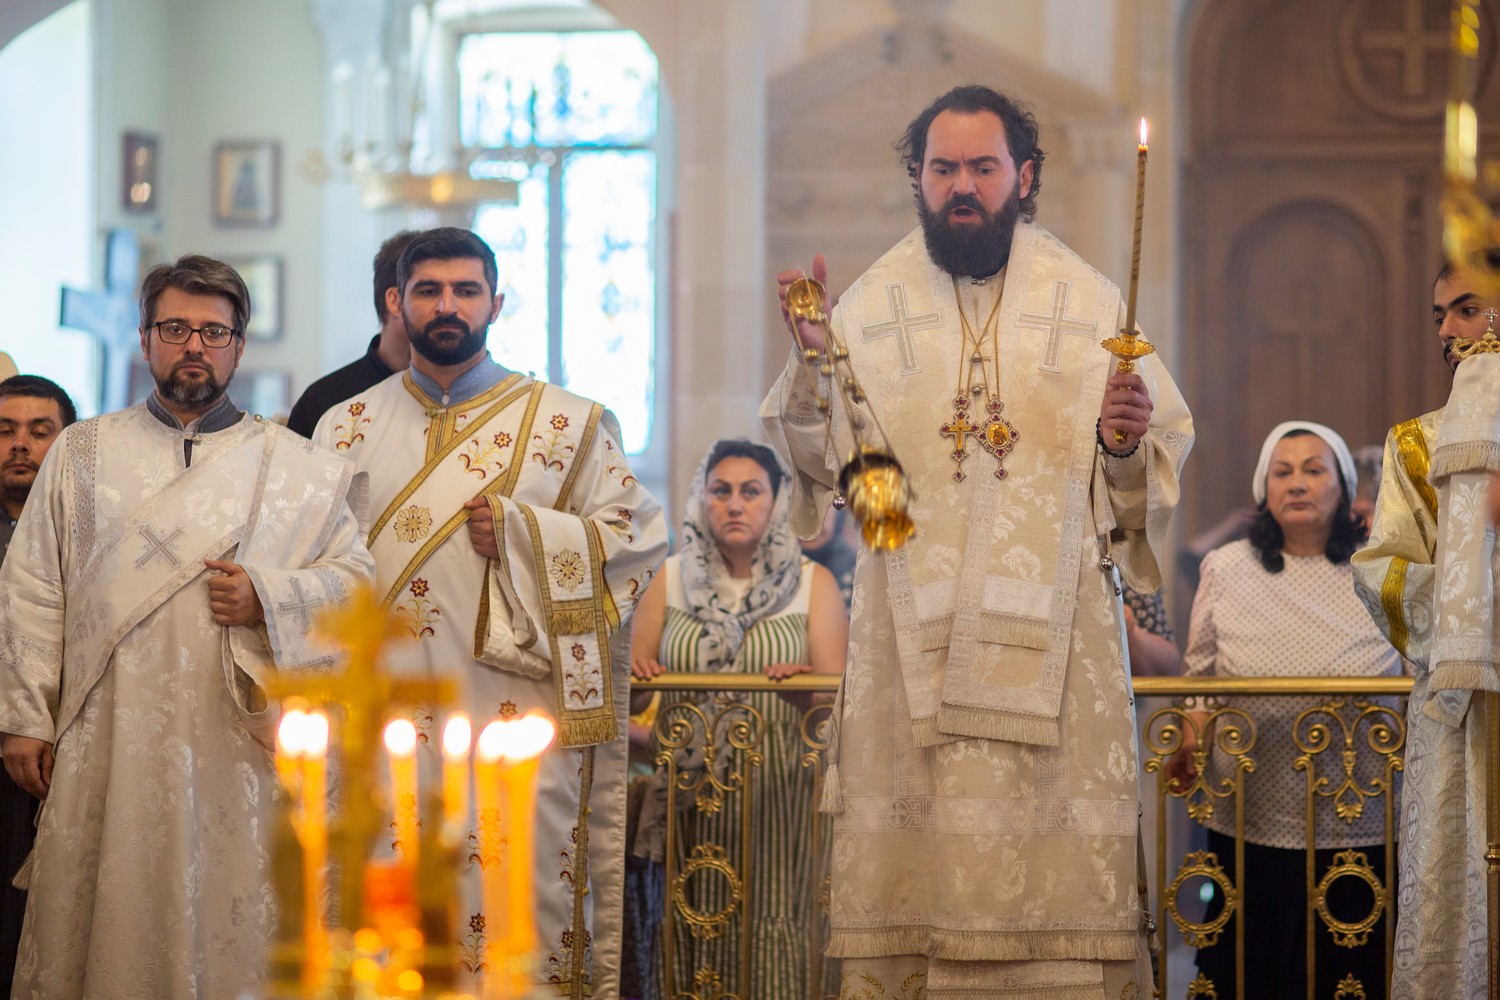 Бакинско-Азербайджанская епархия отмечает годовщину со дня смерти своего первого архиерея – архиепископа Александра (Ищеина)